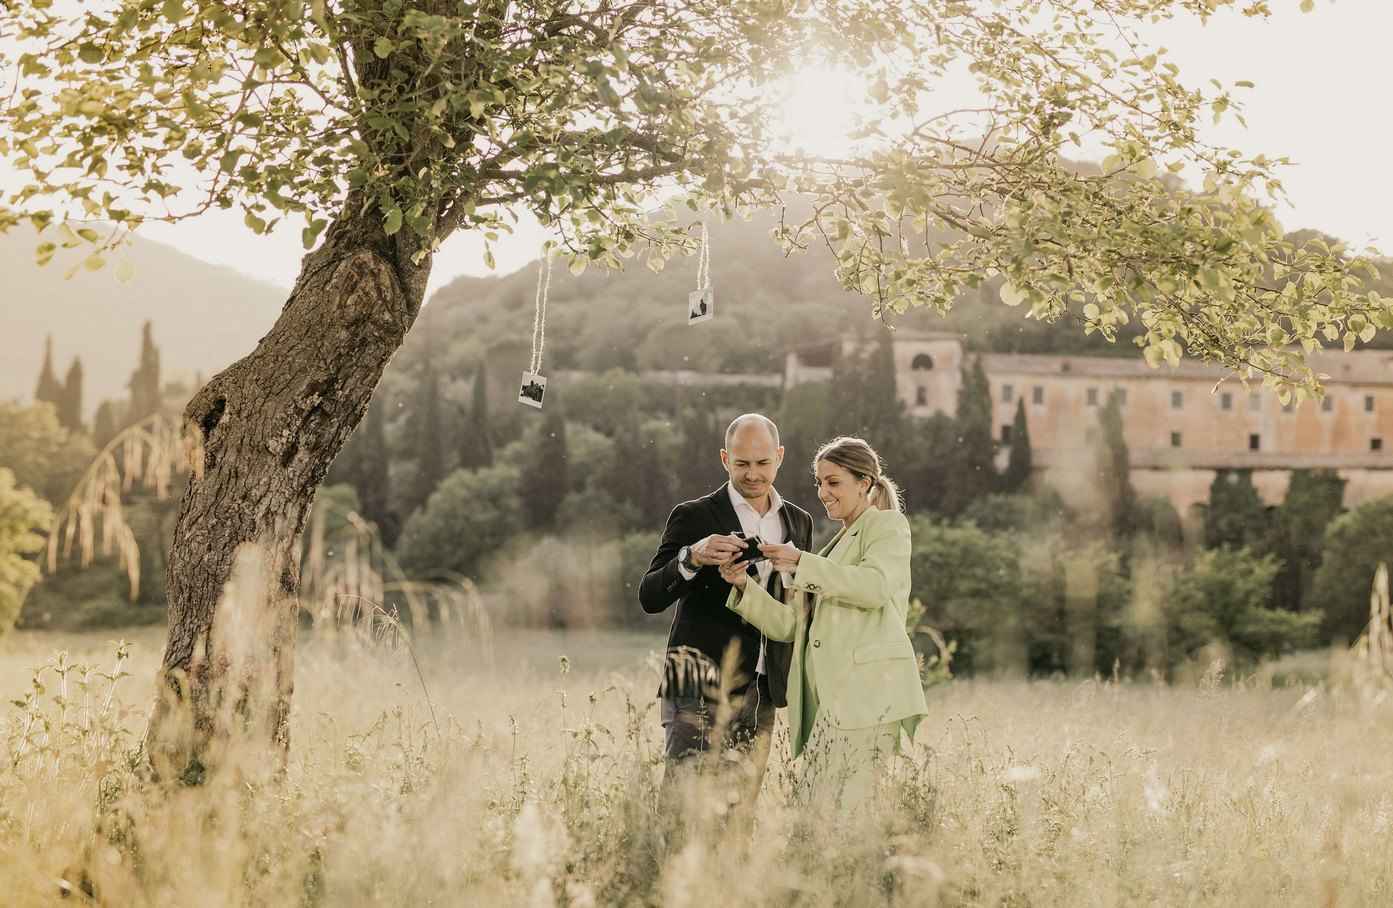 Matrimonio castello alatri_7_11zon